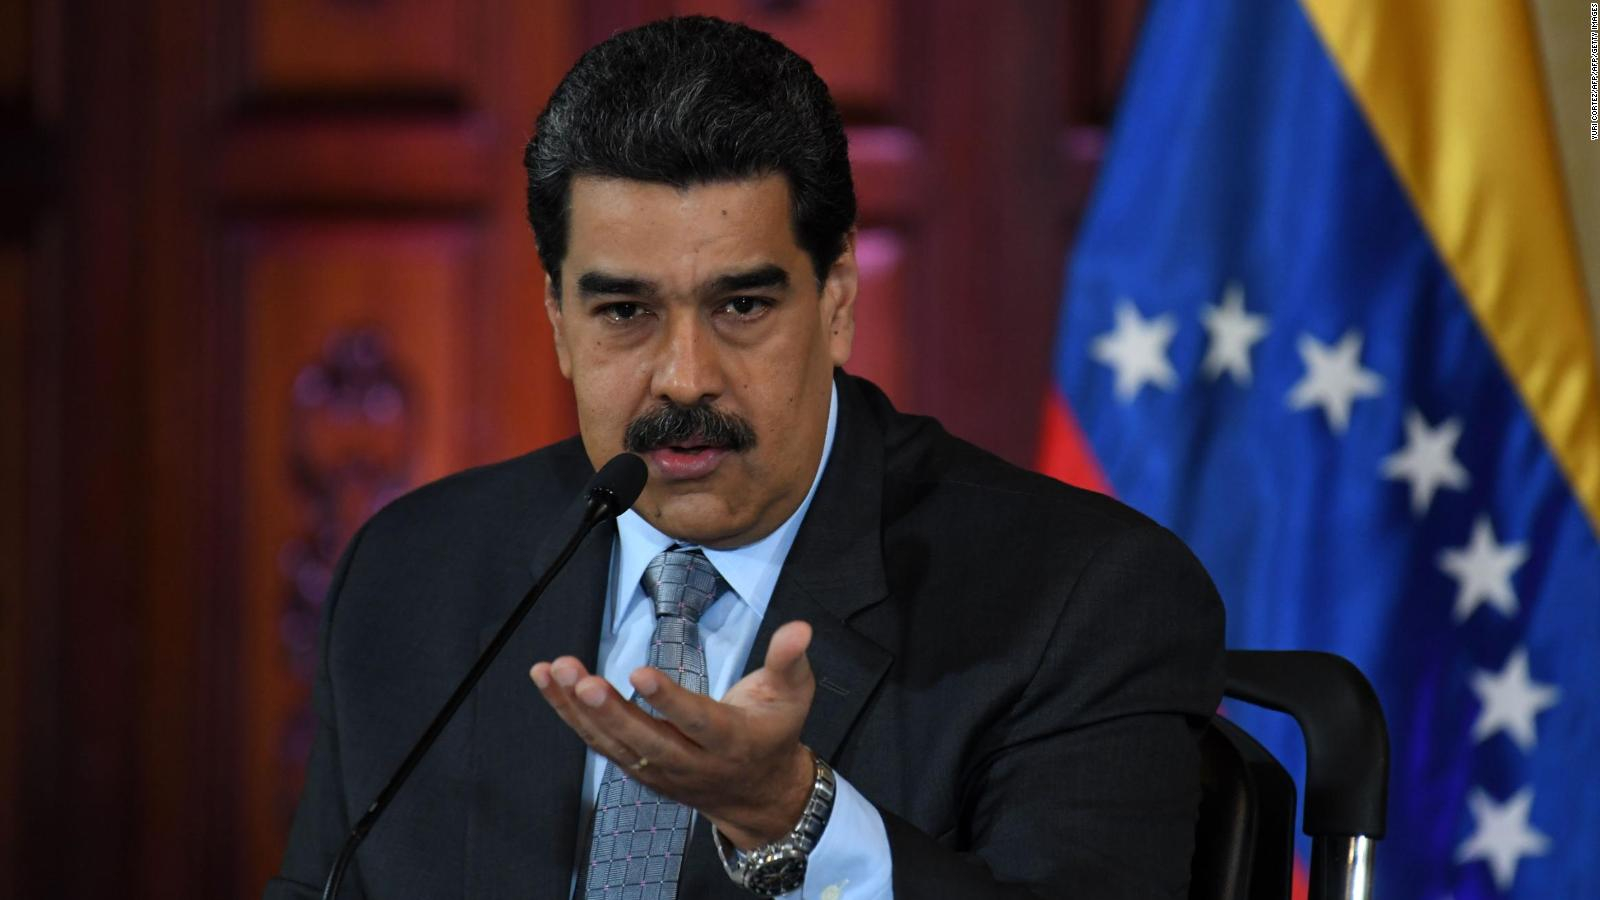 Financial Times especula que podrían llegar noticias positivas sobre el proceso de negociación venezolana en las próximas semanas